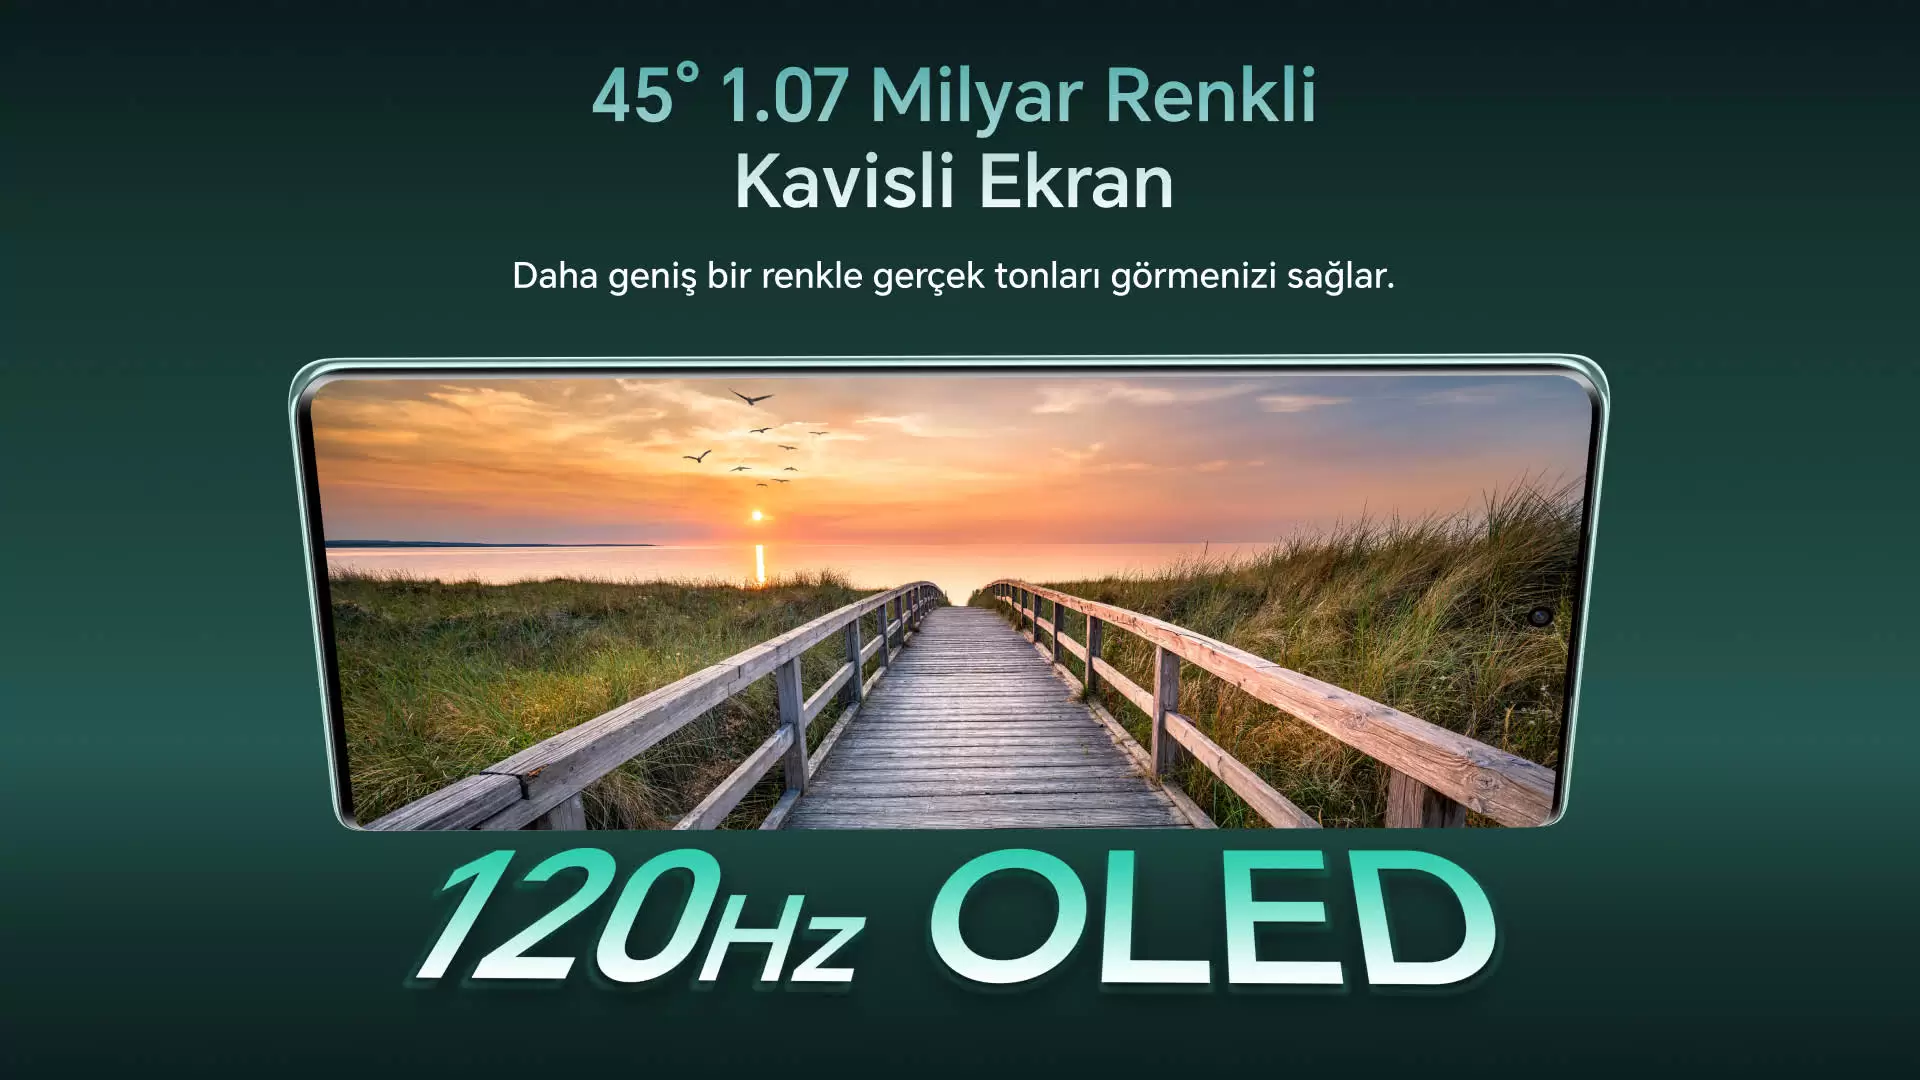 HONOR X9a özel fiyatı ile Türkiye’de satışa çıktı